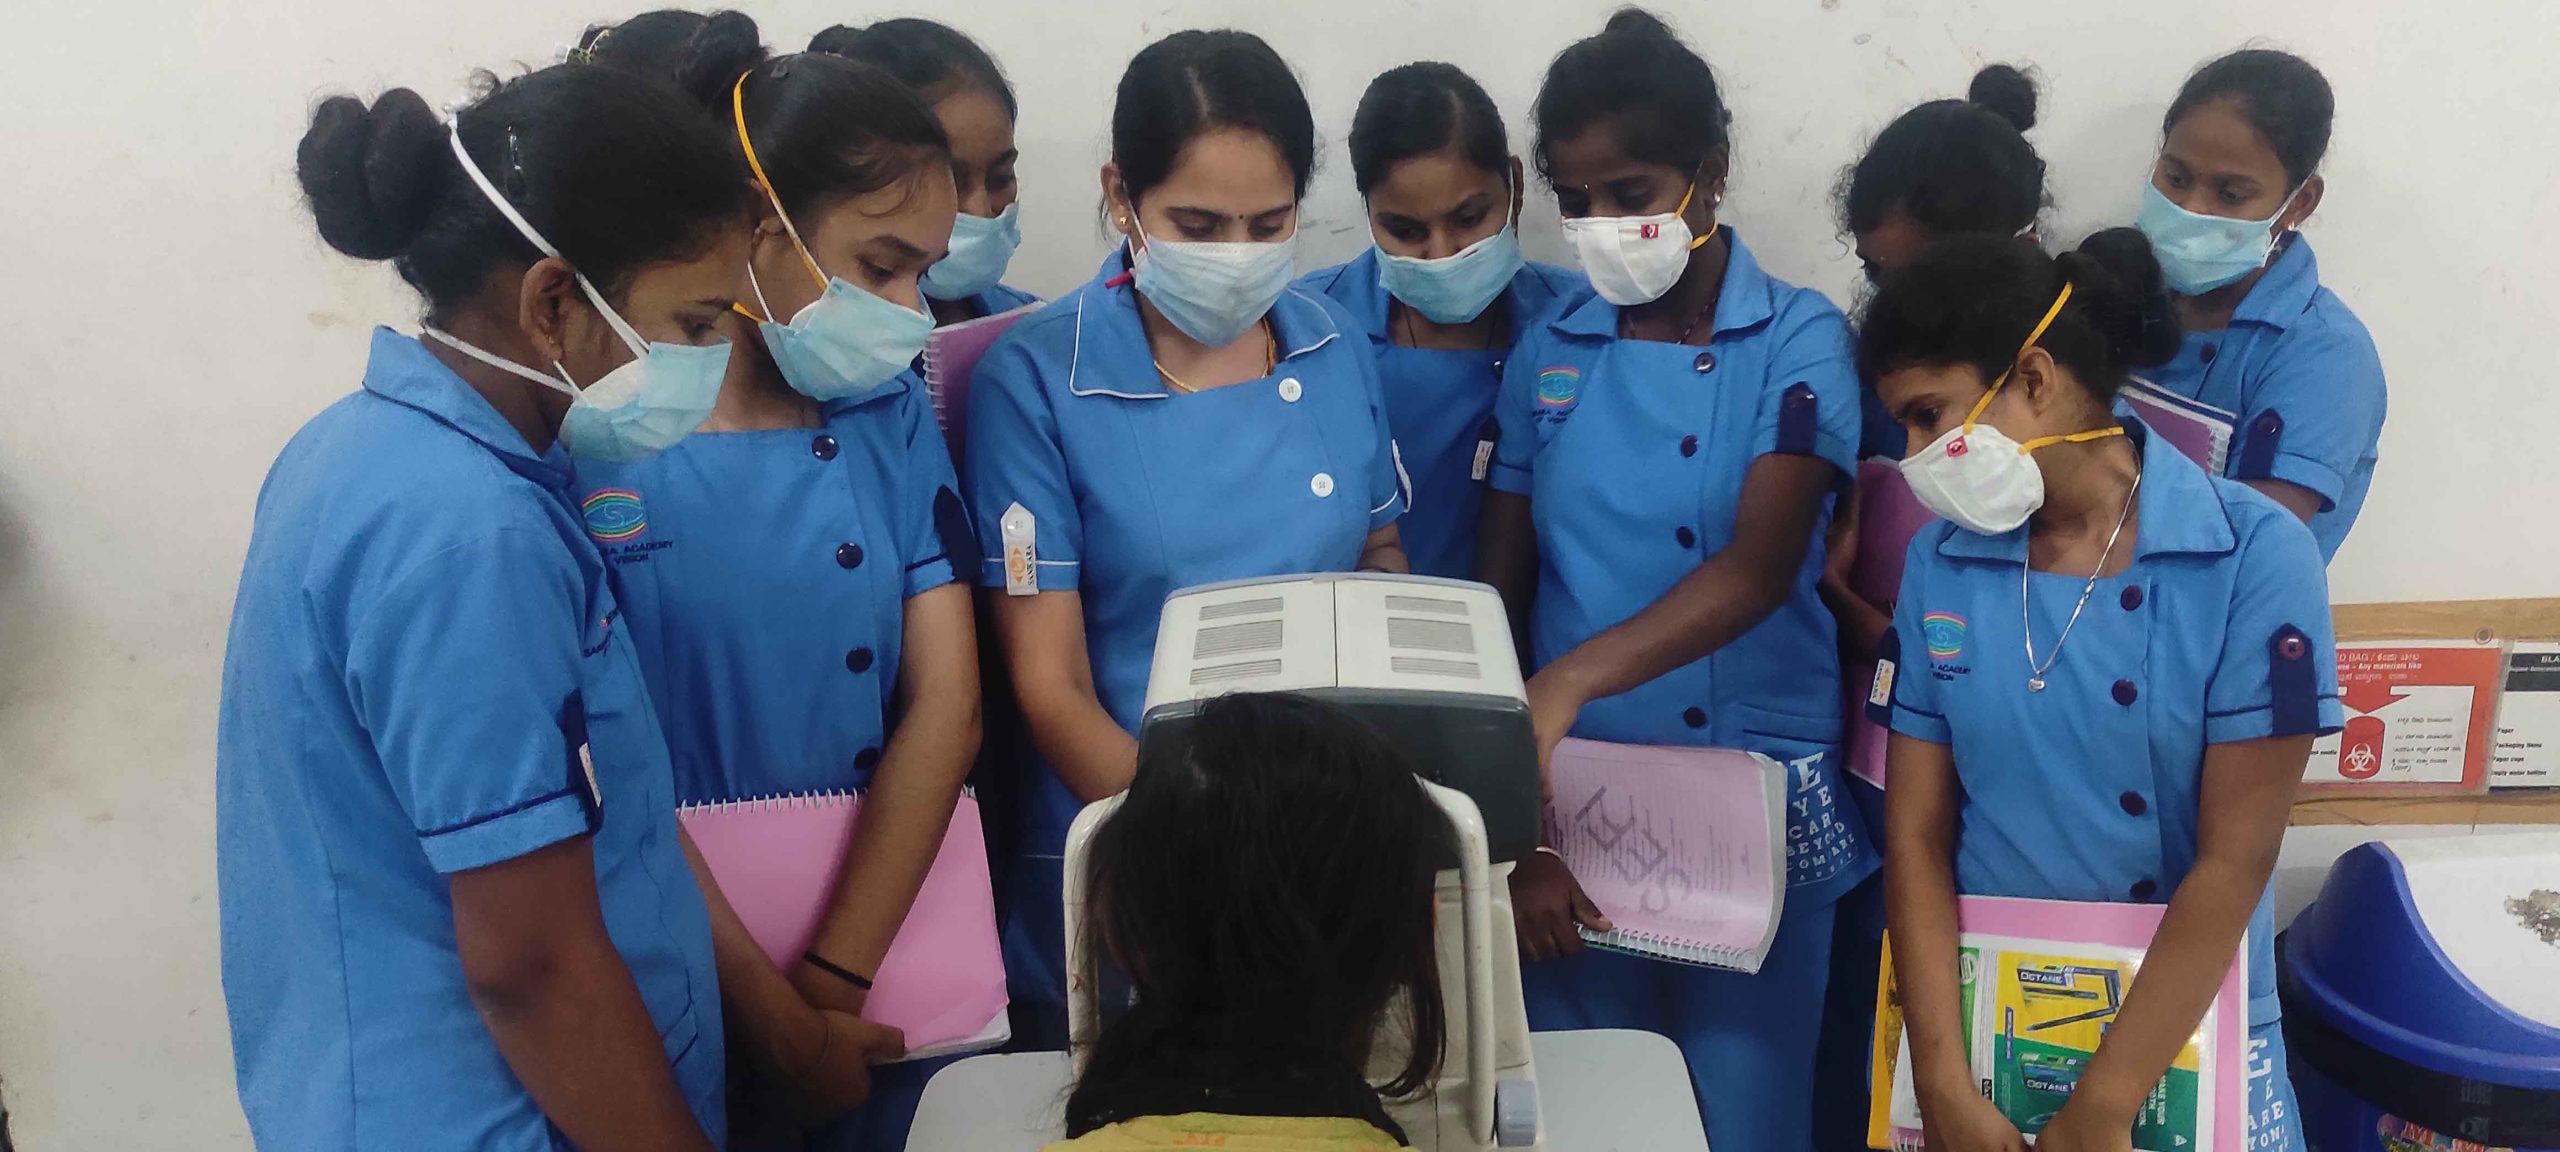 Equipment training to a group of Mission Saksham (AOP) students at L.V. Prasad Eye Institute Hyderabad.